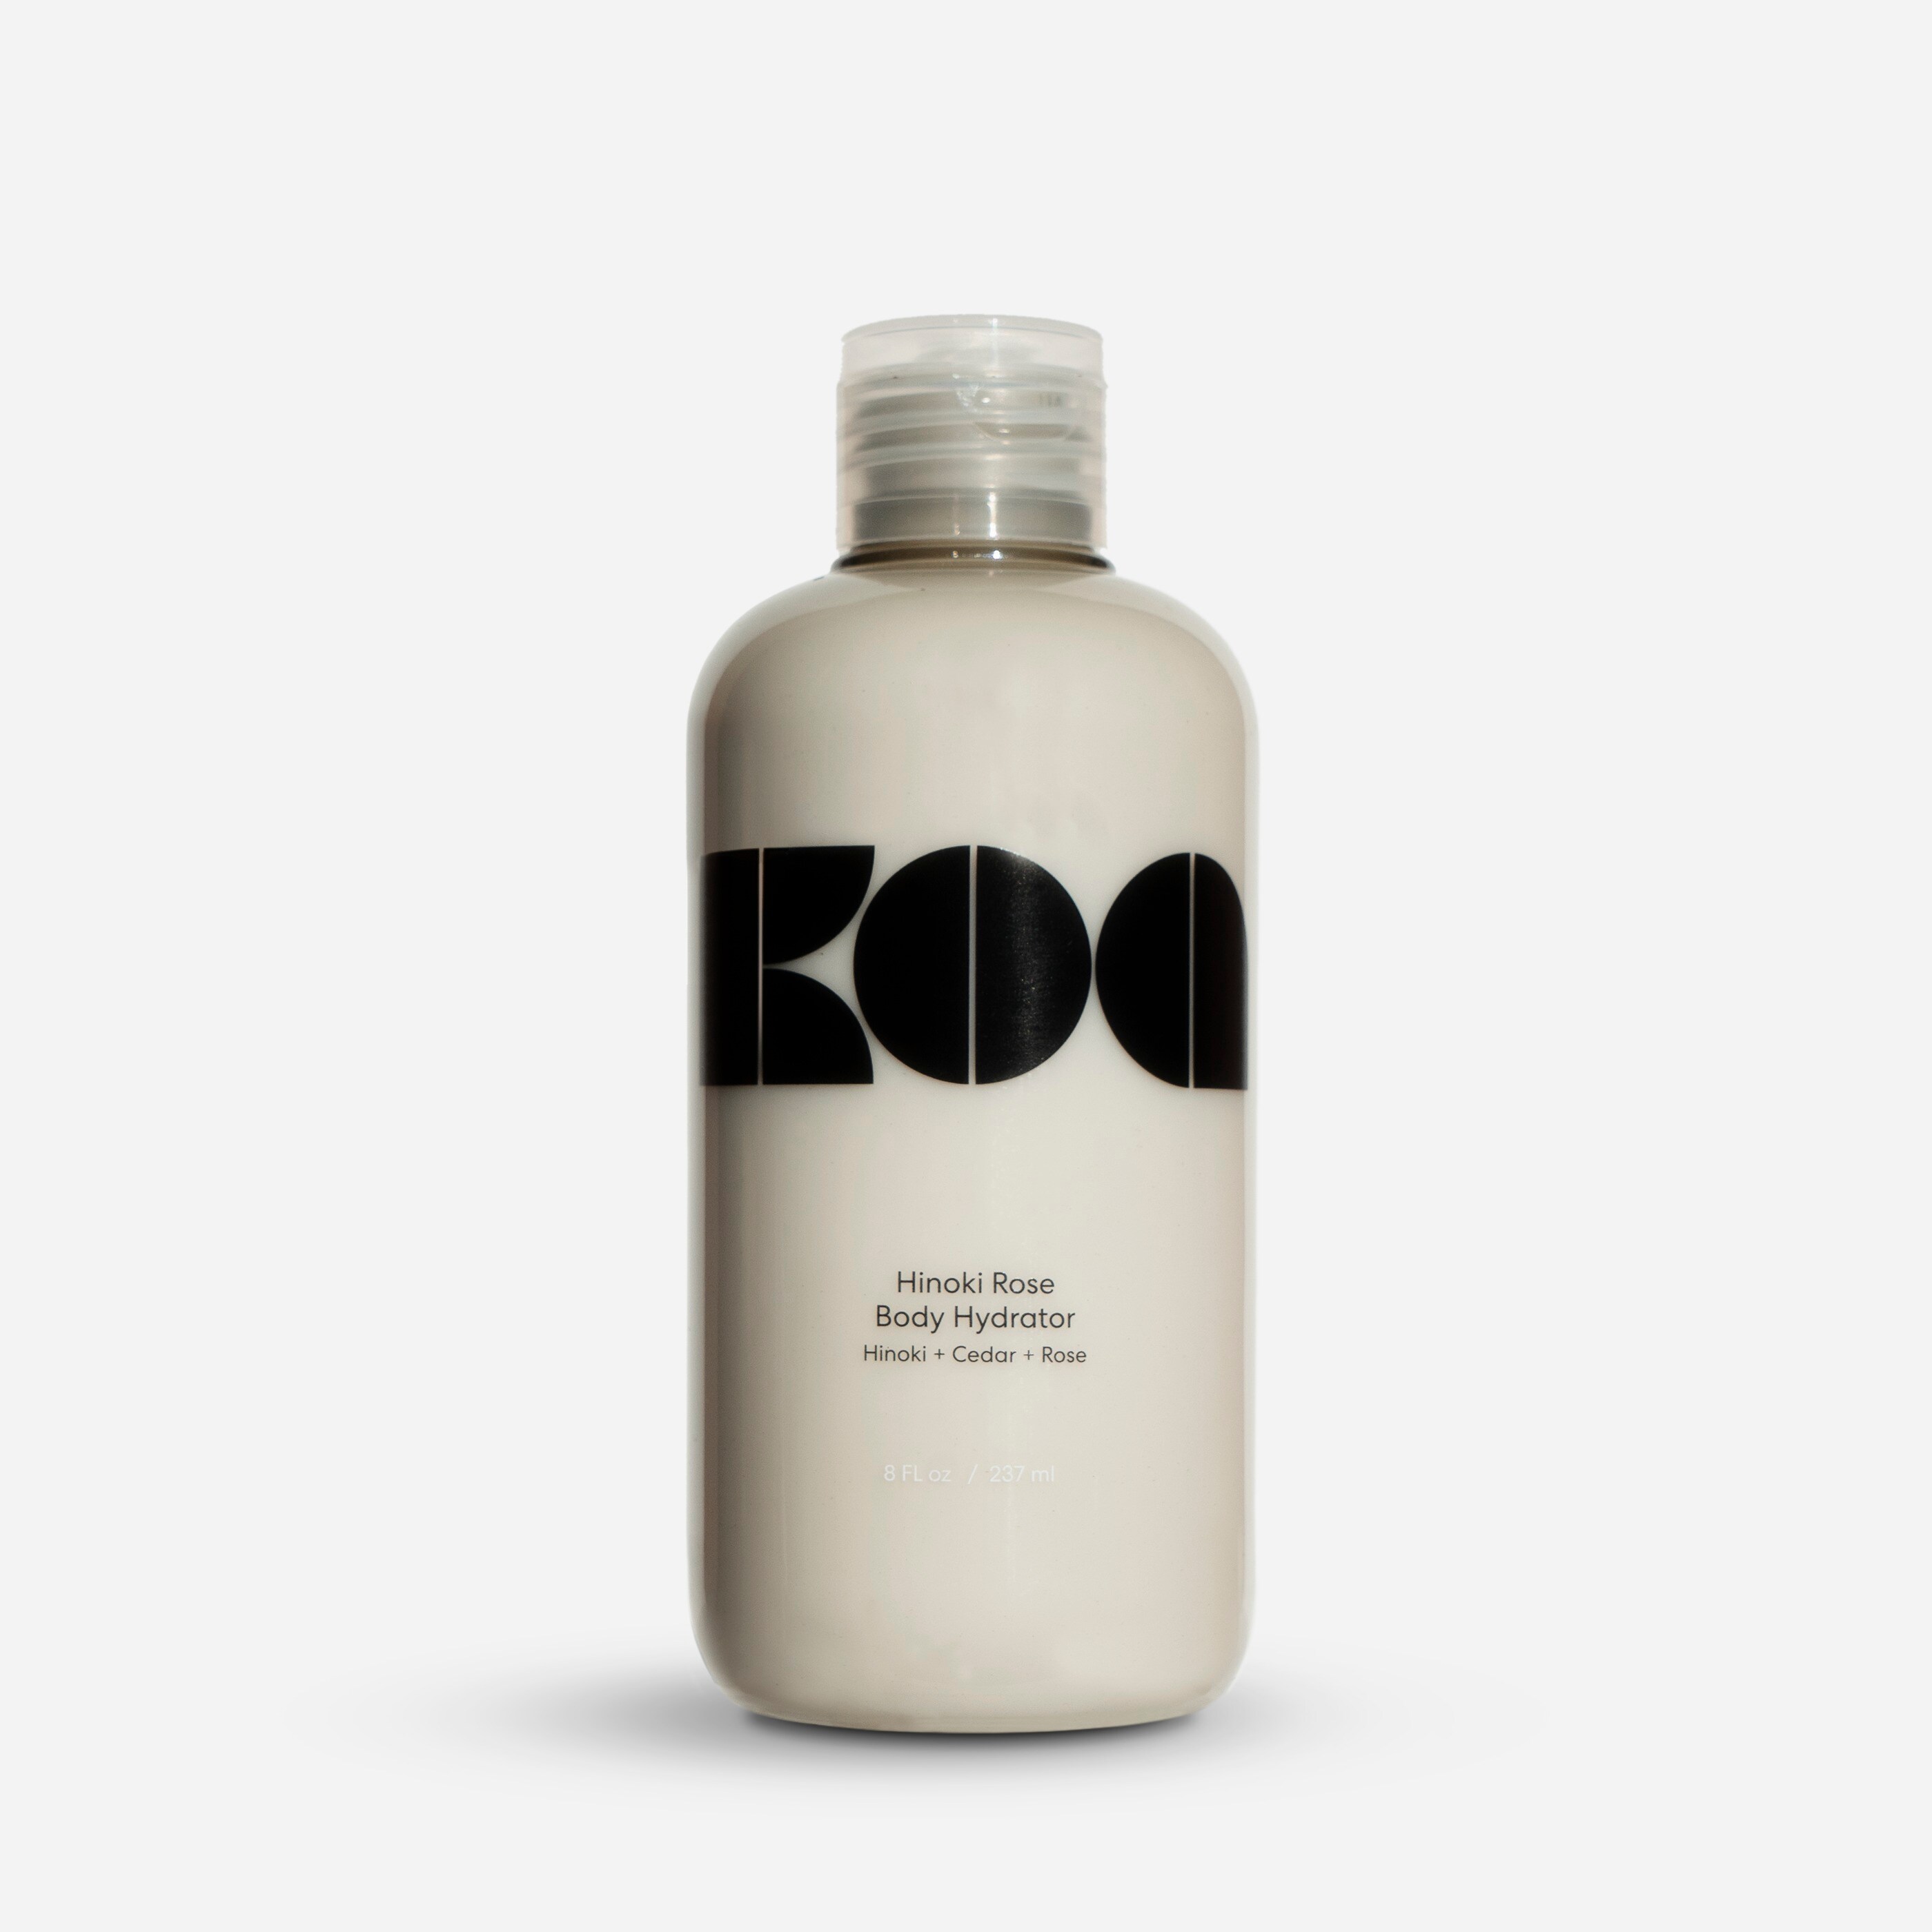  Koa™ body hydrator